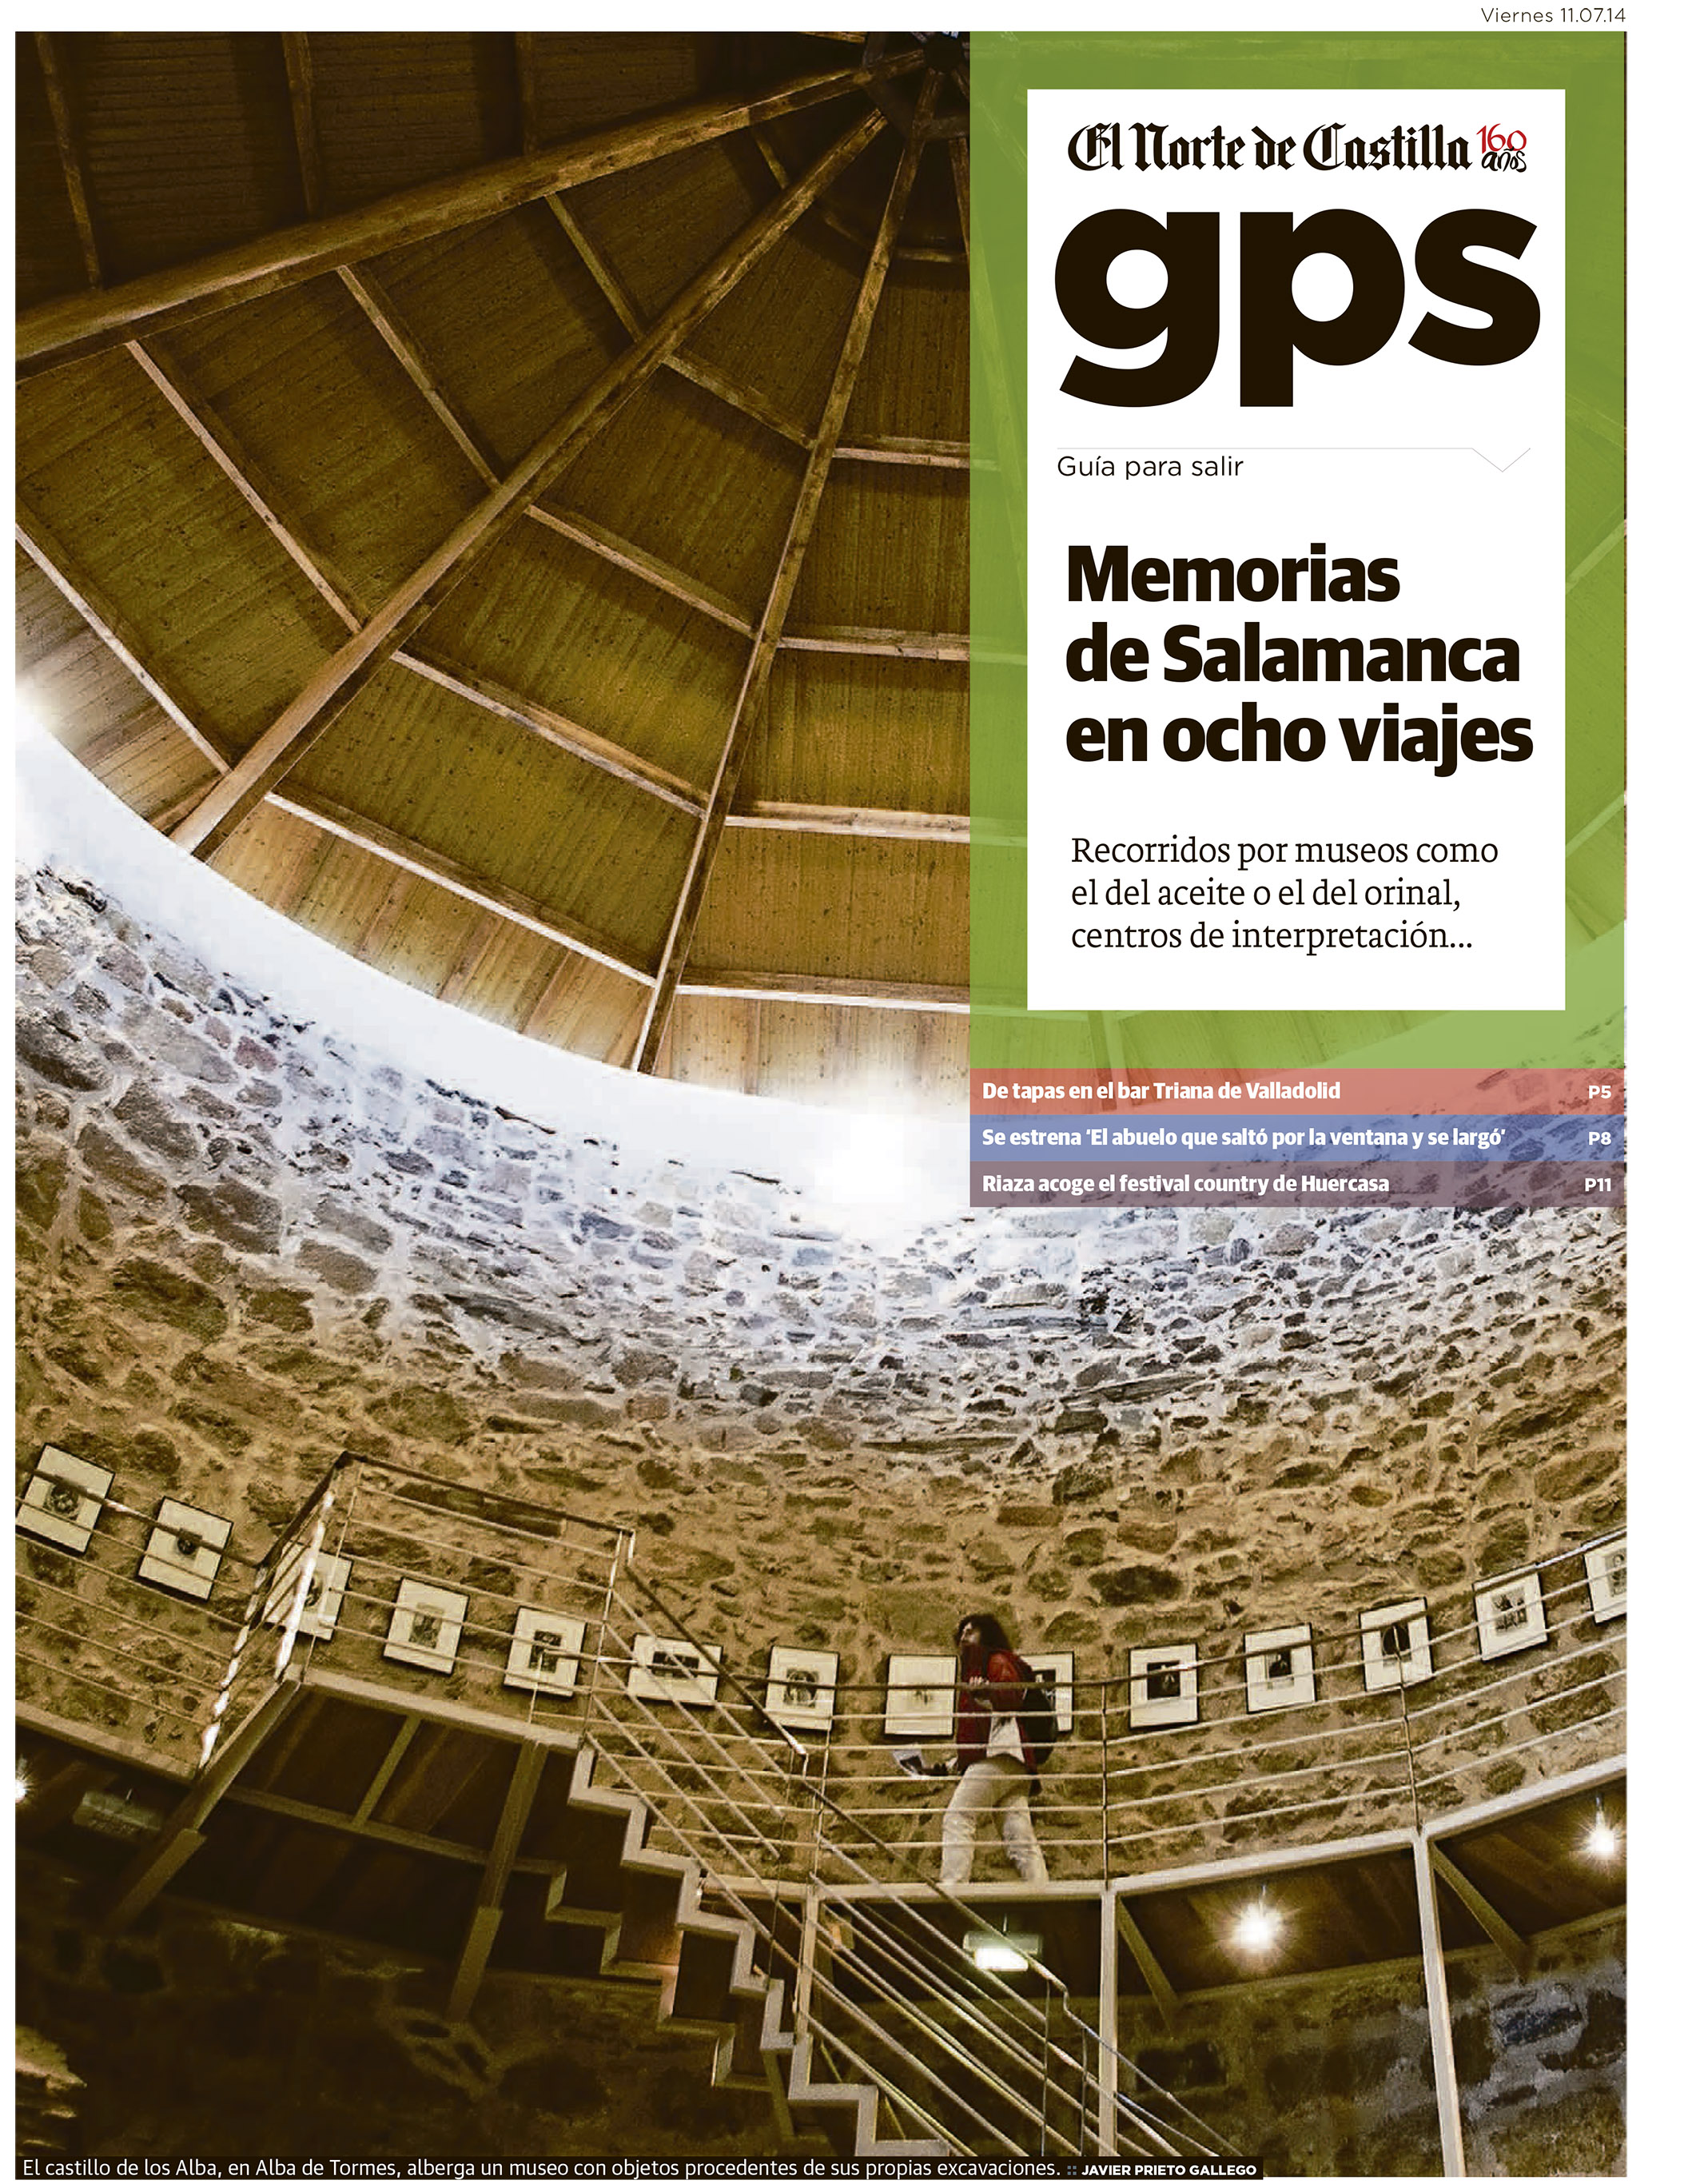 Reportaje sobre museos y colecciones en la provincia de Salamanca publicado por Javier Prieto Gallego en El Norte de Castilla.